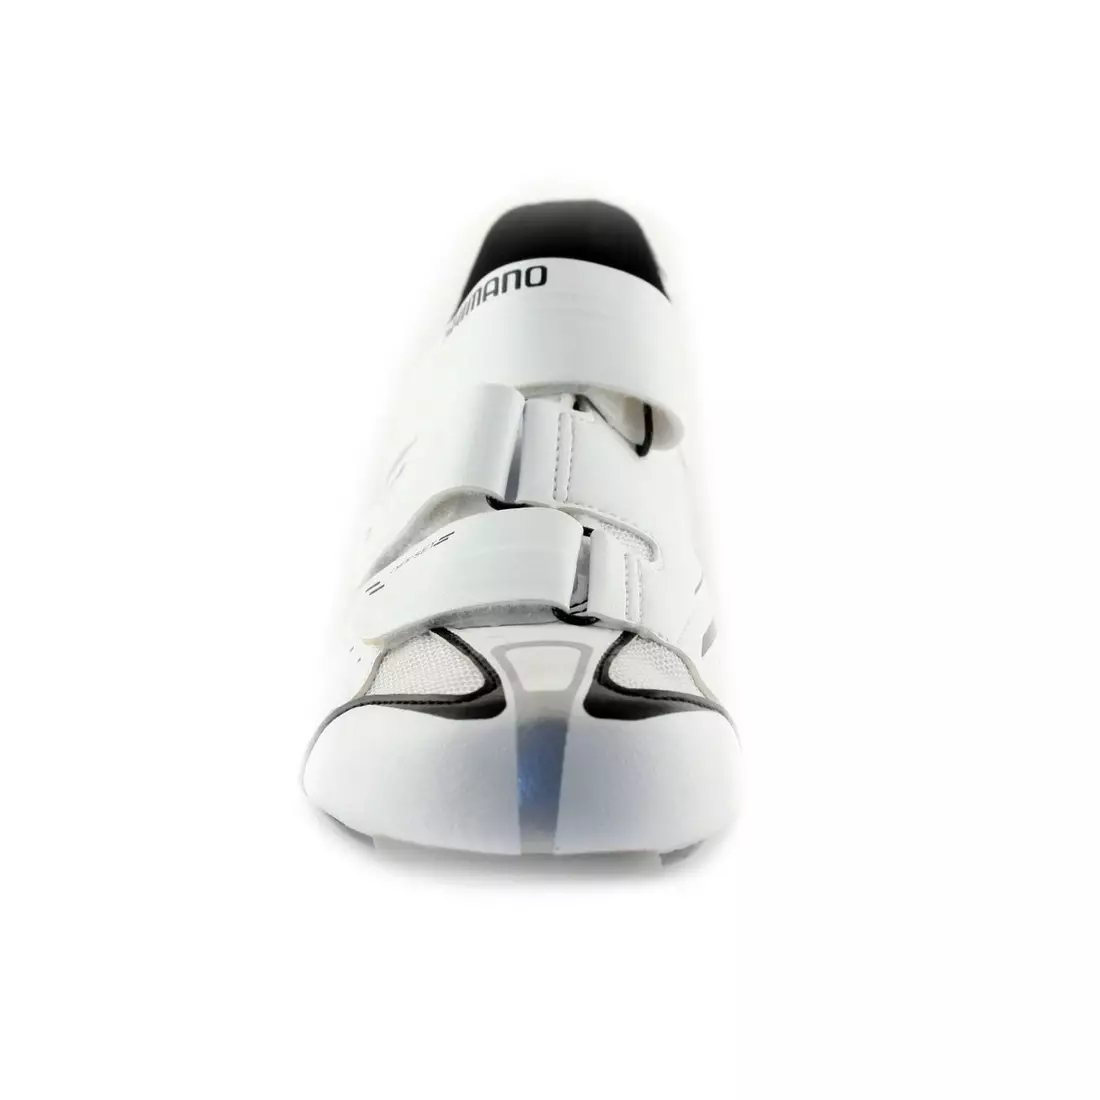 SHIMANO SH-R078 - cestné topánky, farba: biela